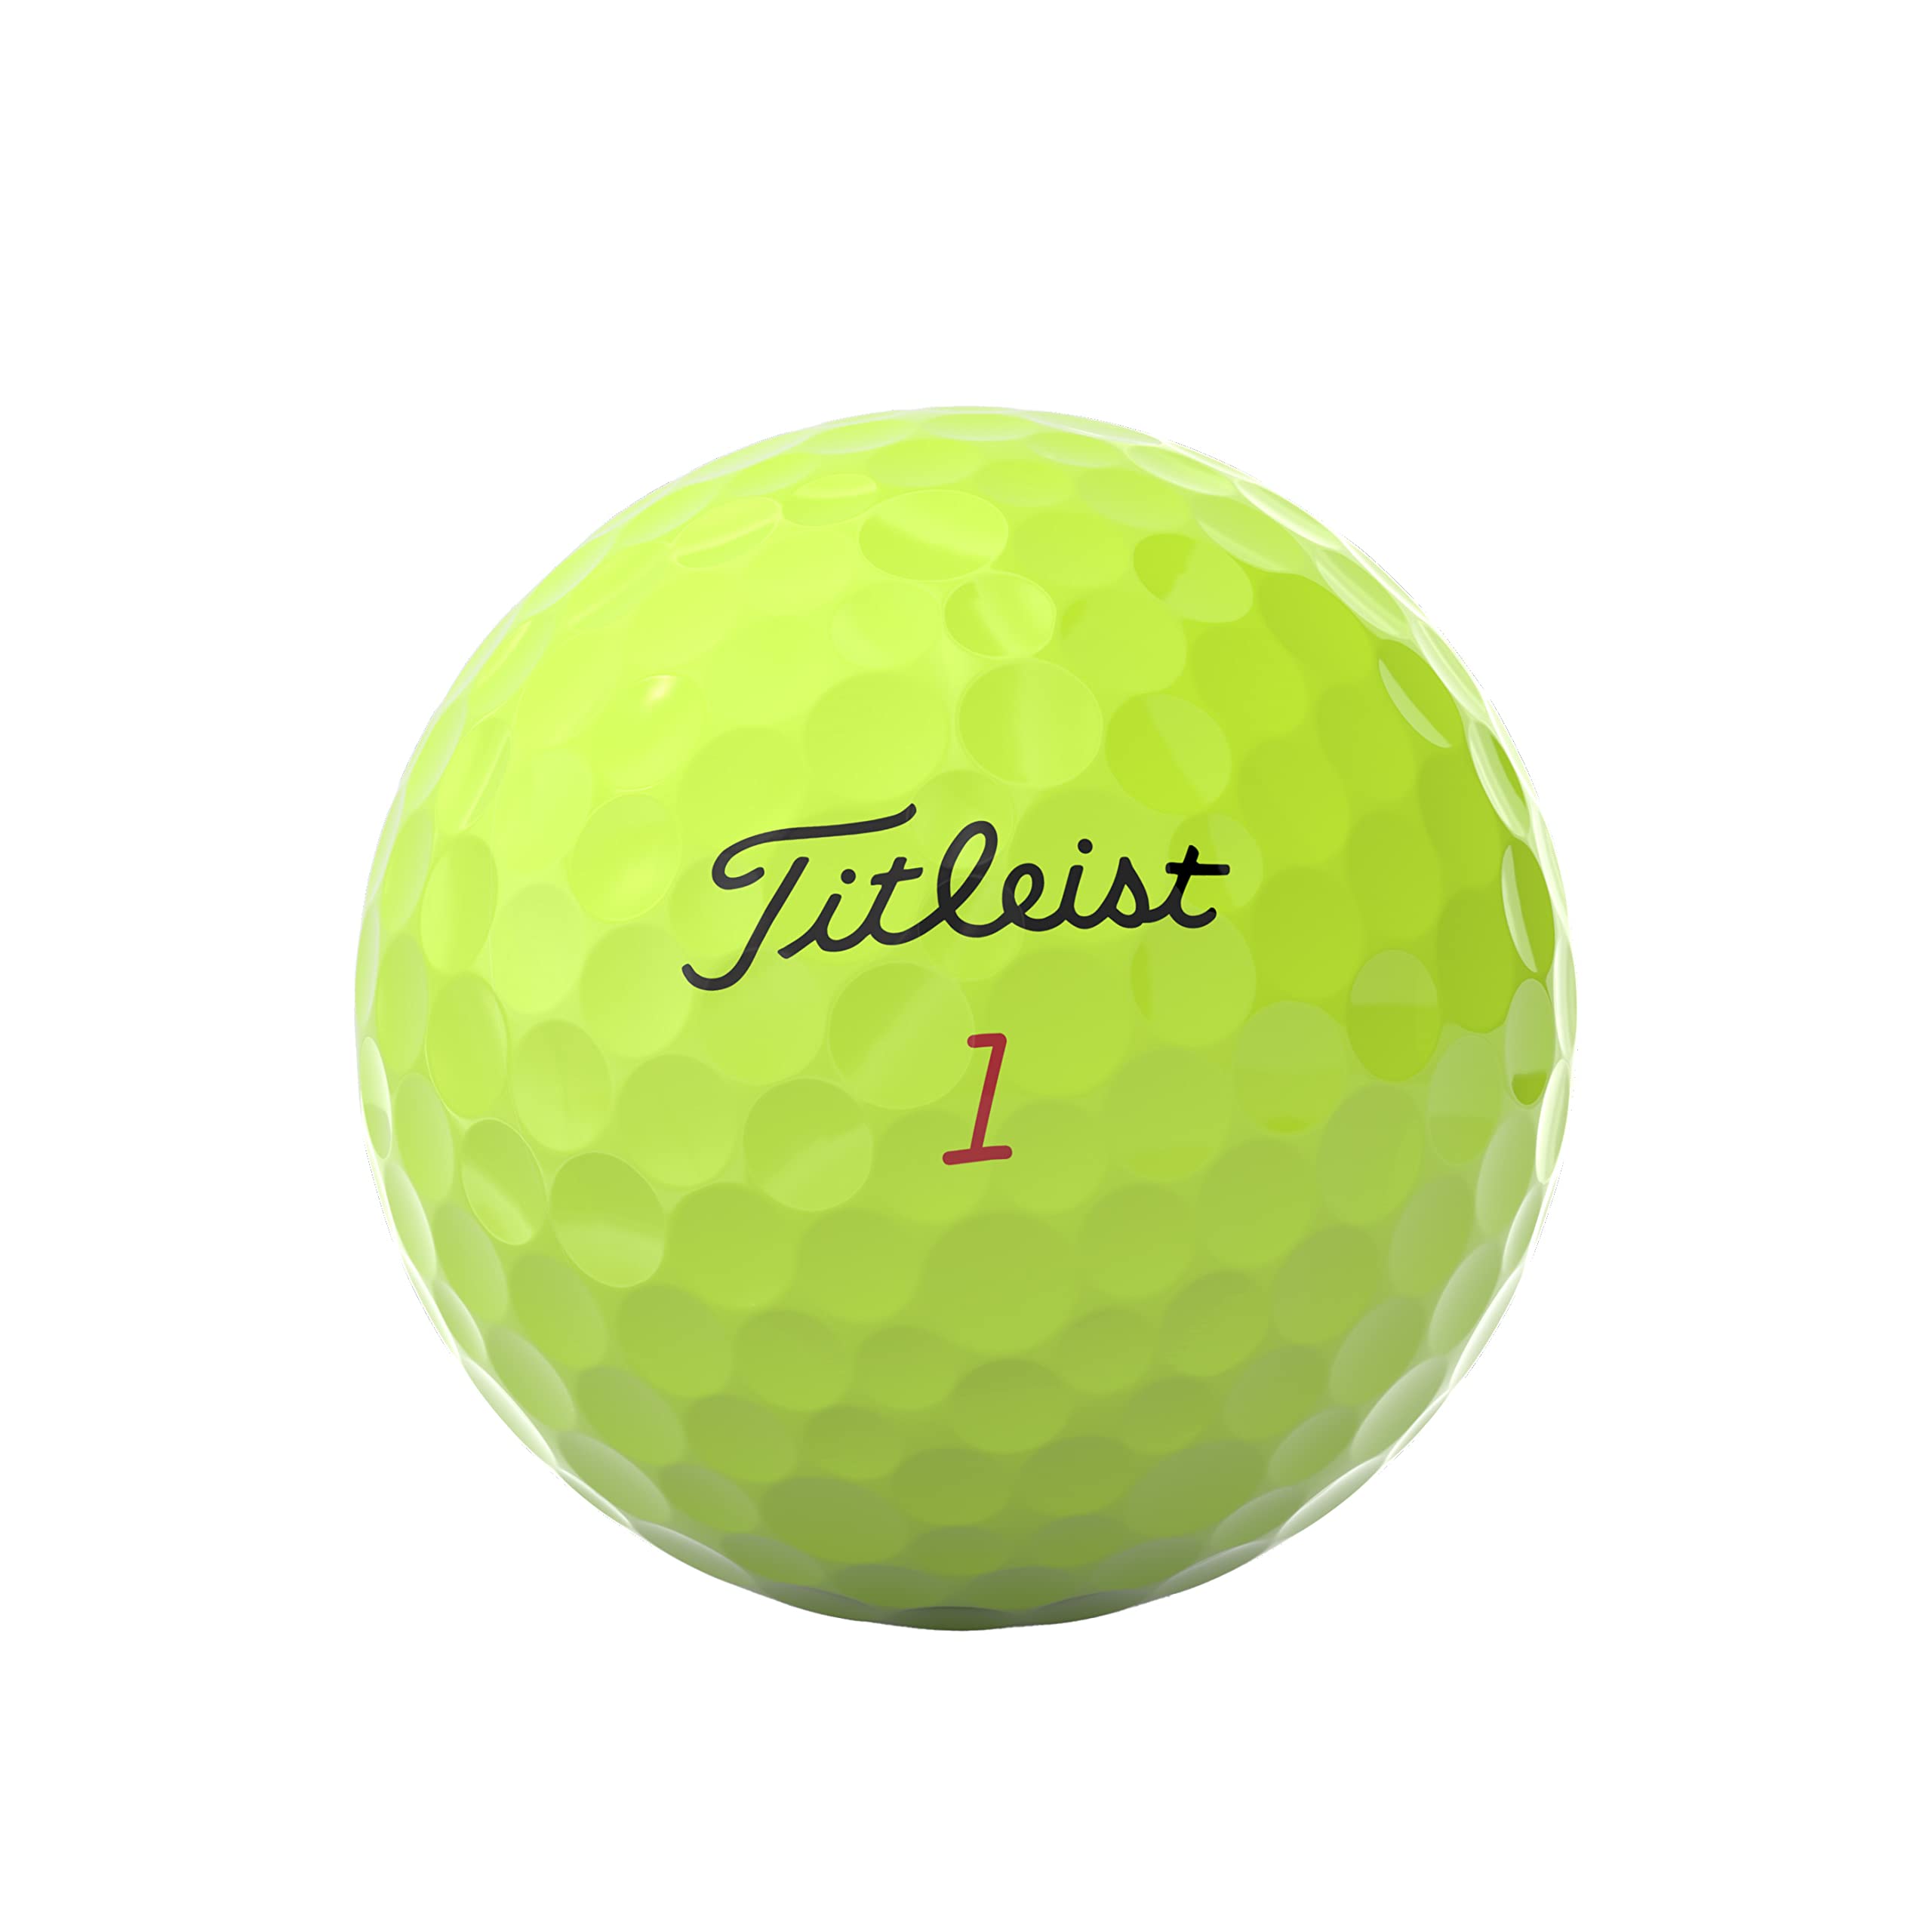 Titleist Pro V1x Golf Balls (One Dozen)